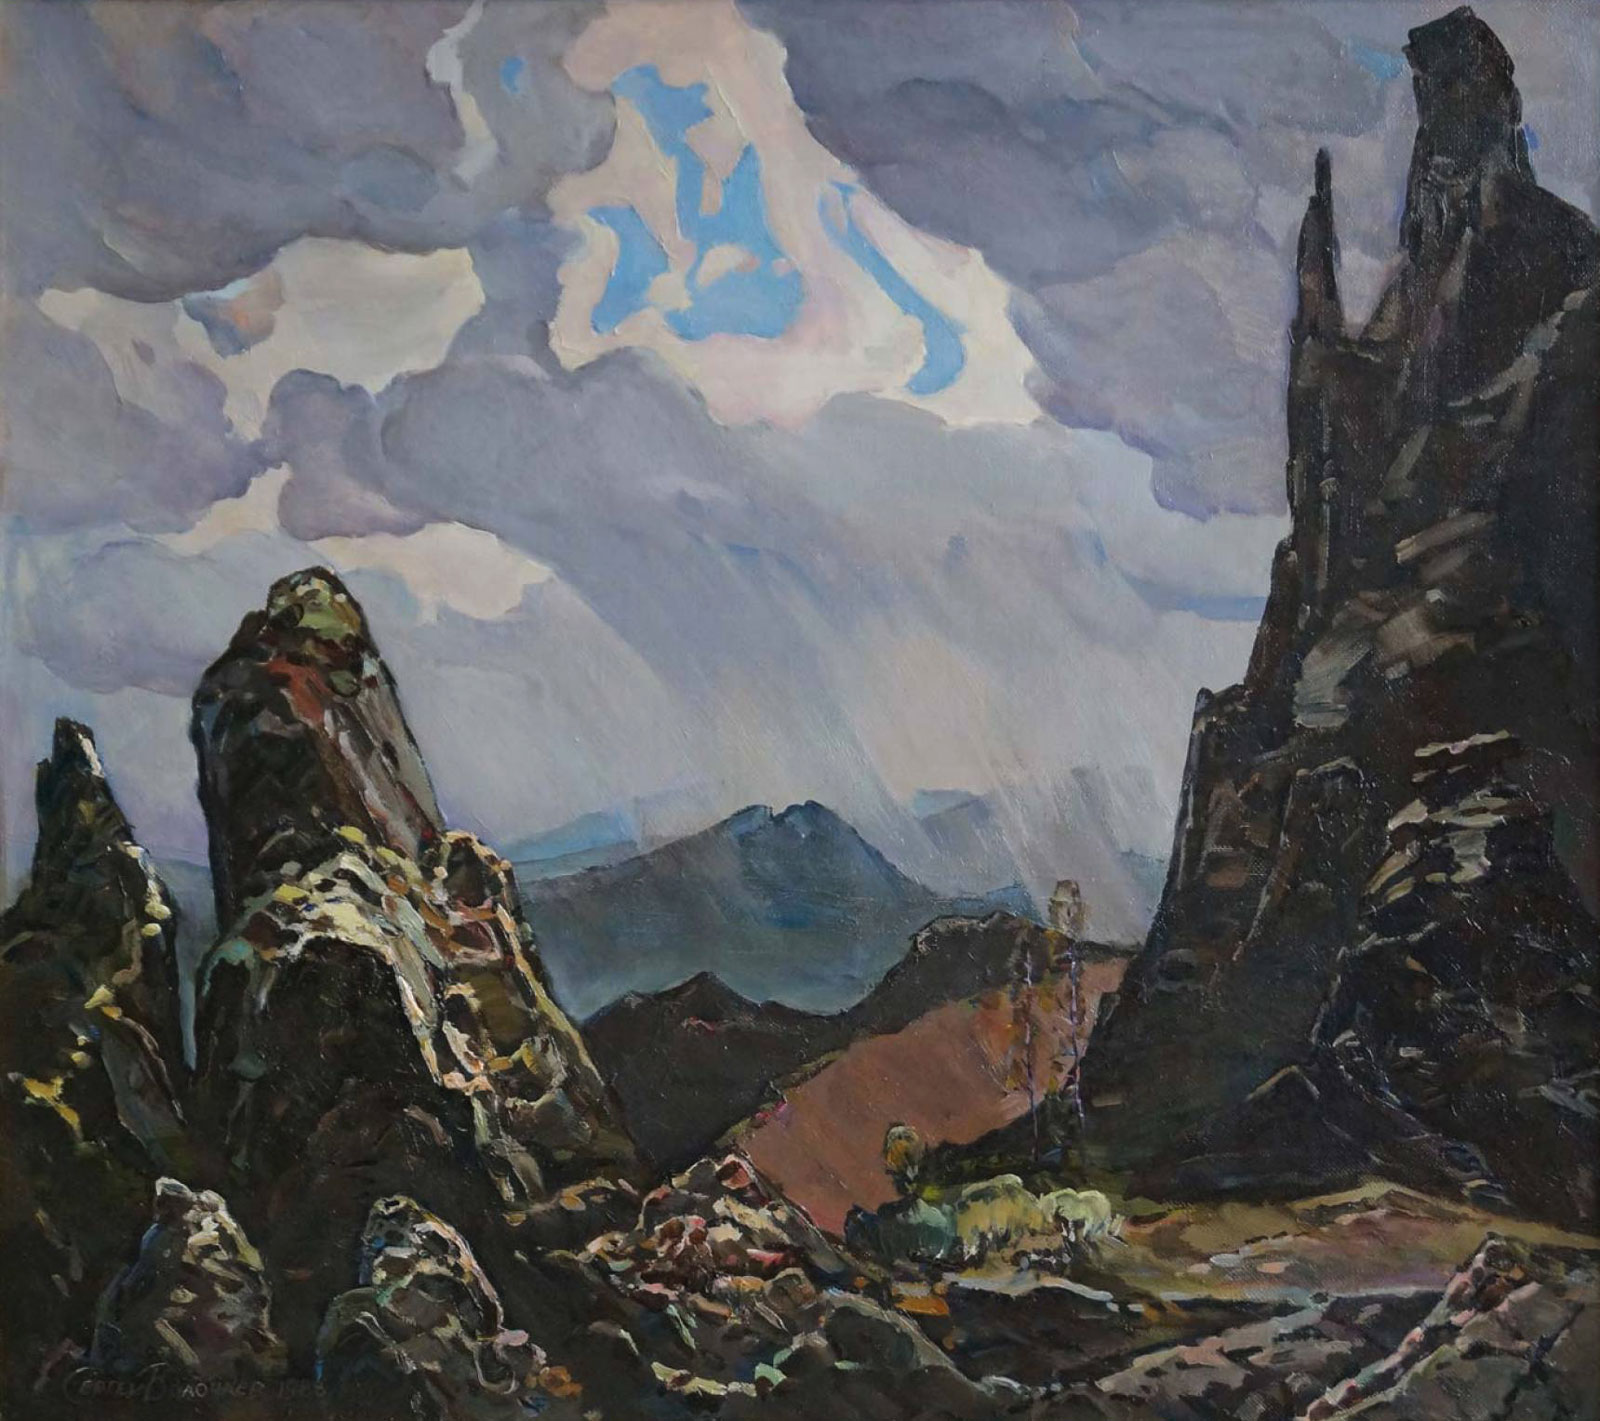 Northern Ural, Sergei Volochaev, Buy the painting Oil